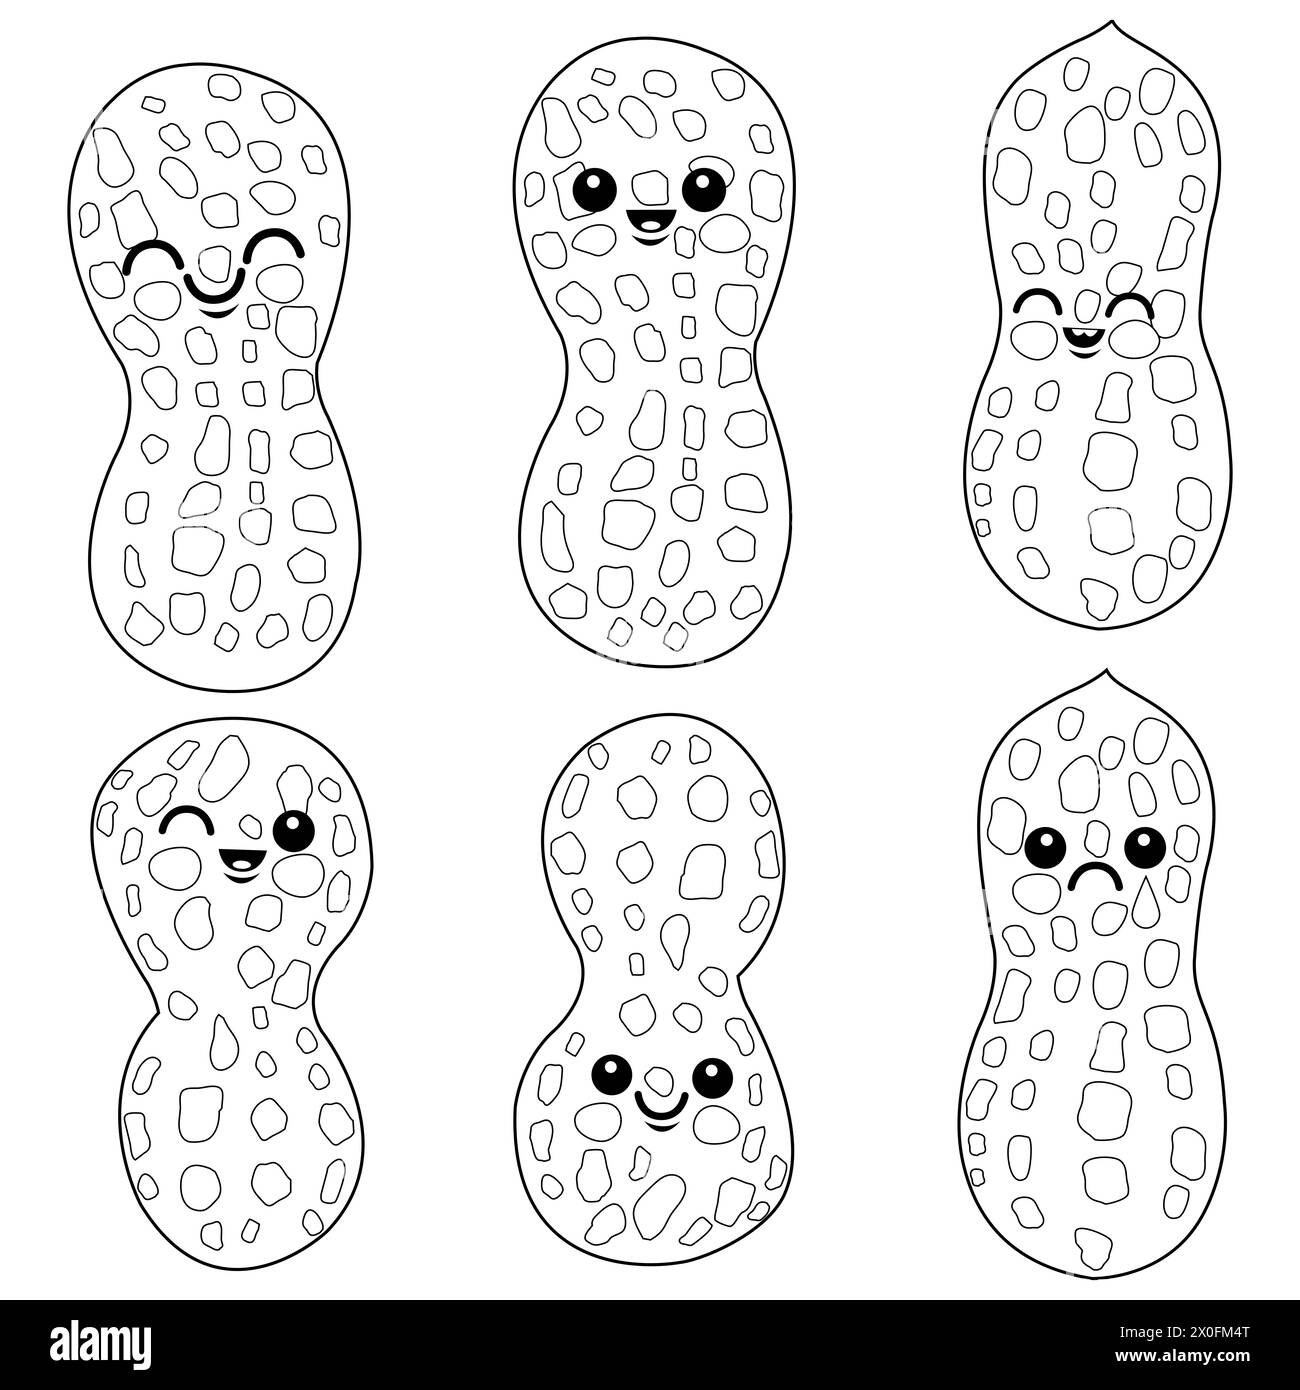 Personnages de cacahuètes mignons. Ensemble de cacahuètes de dessin animé. Coloriage noir et blanc Banque D'Images